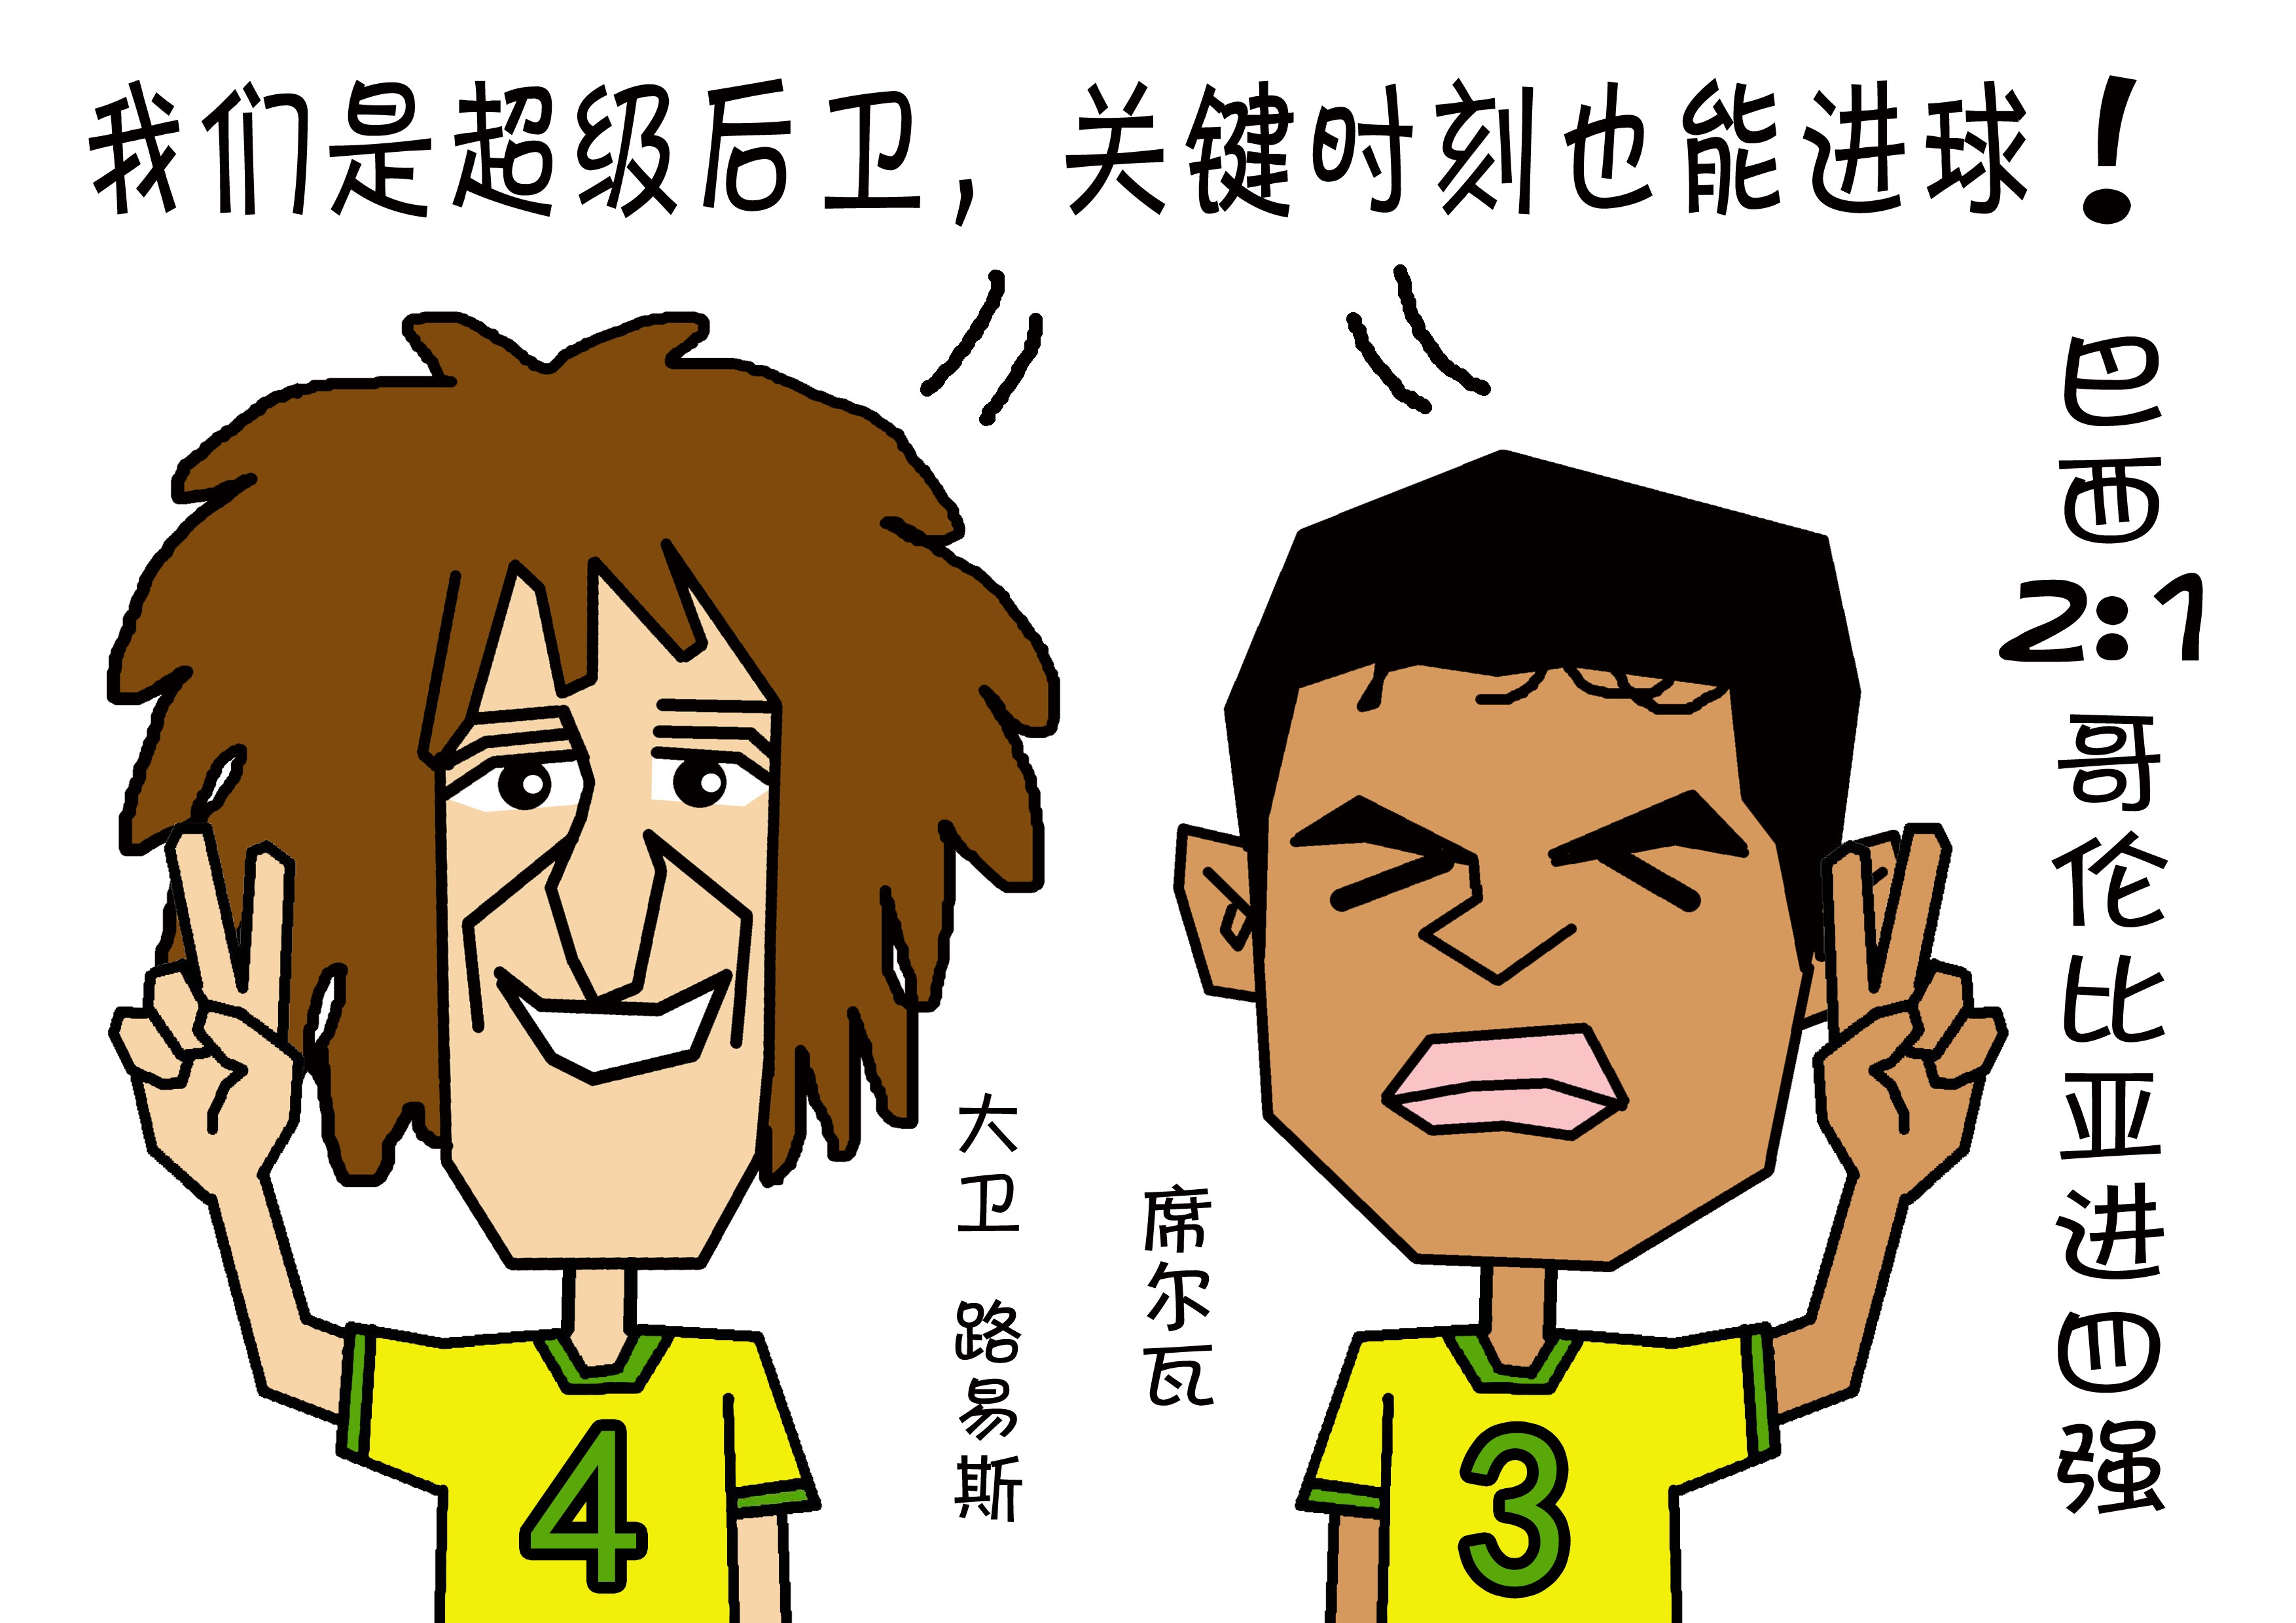 大杨漫画:2014巴西世界杯回顾